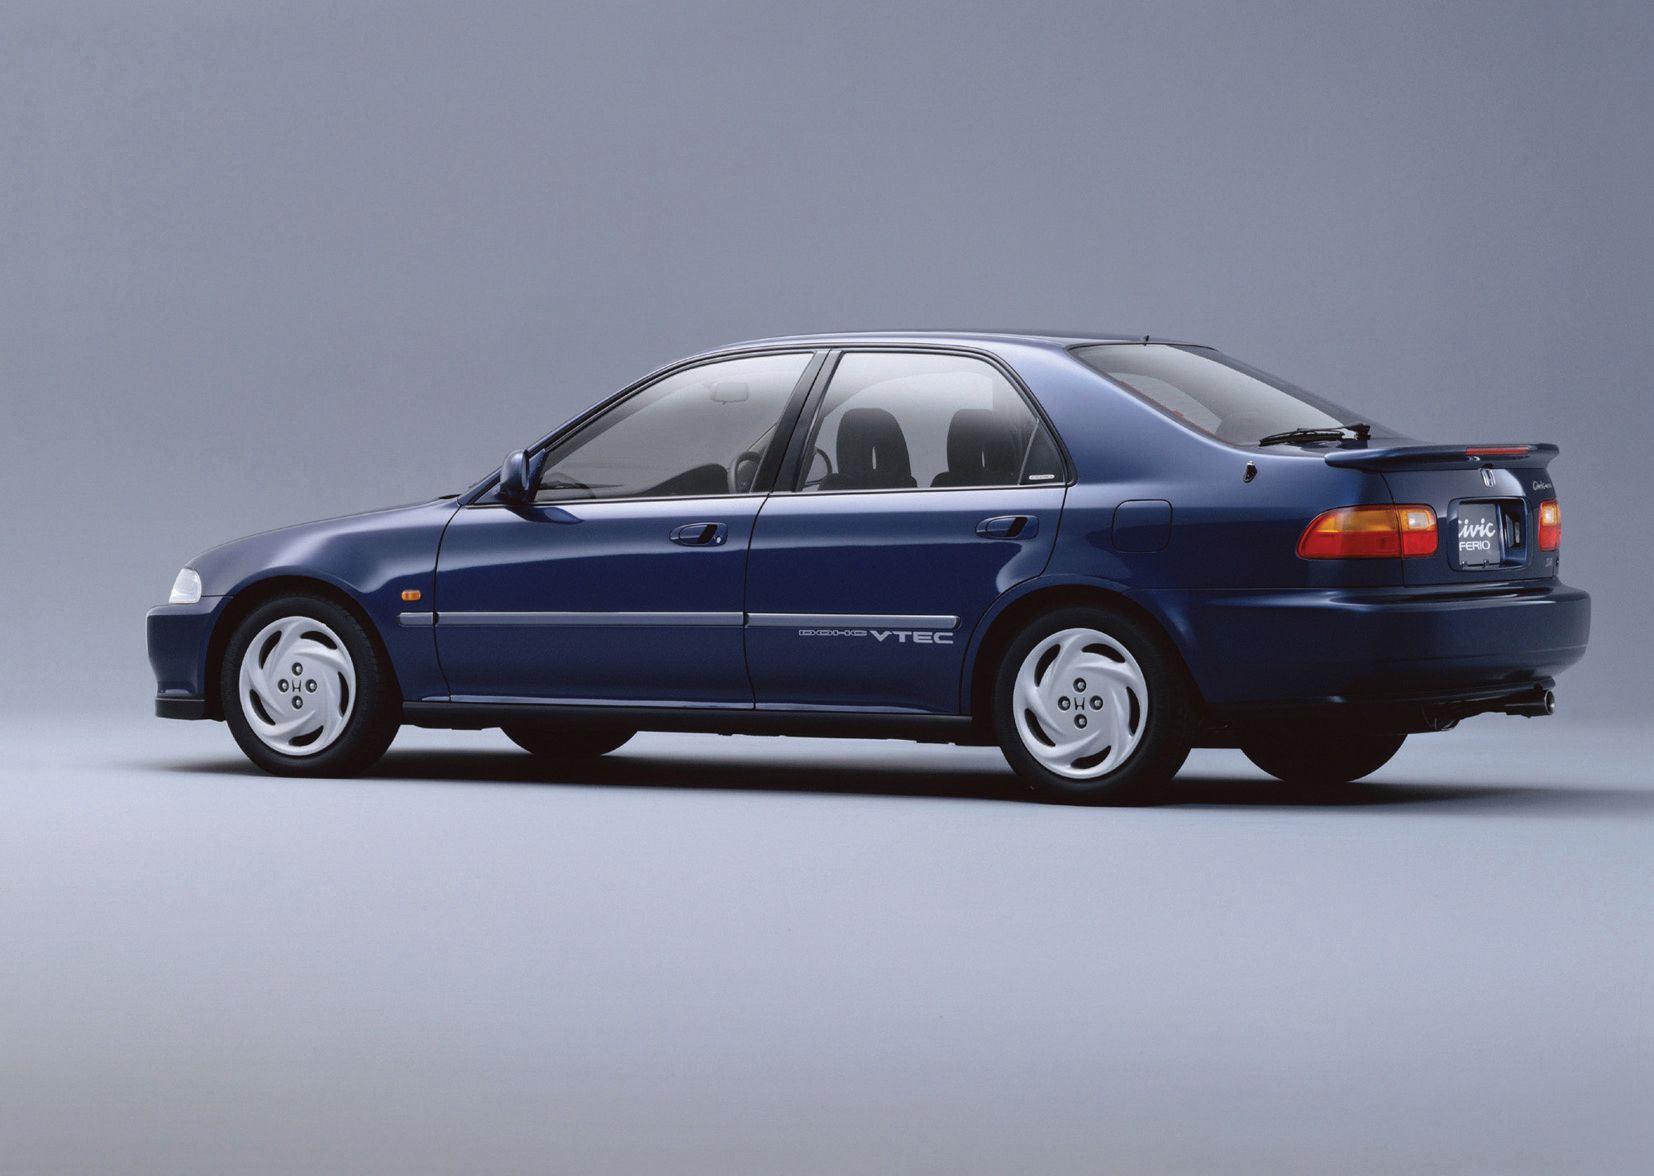 Хонда 95 год. Honda Civic 5 седан. Honda Civic Ferio 1. Хонда Цивик 5 поколения седан. Honda Civic 1991 седан.